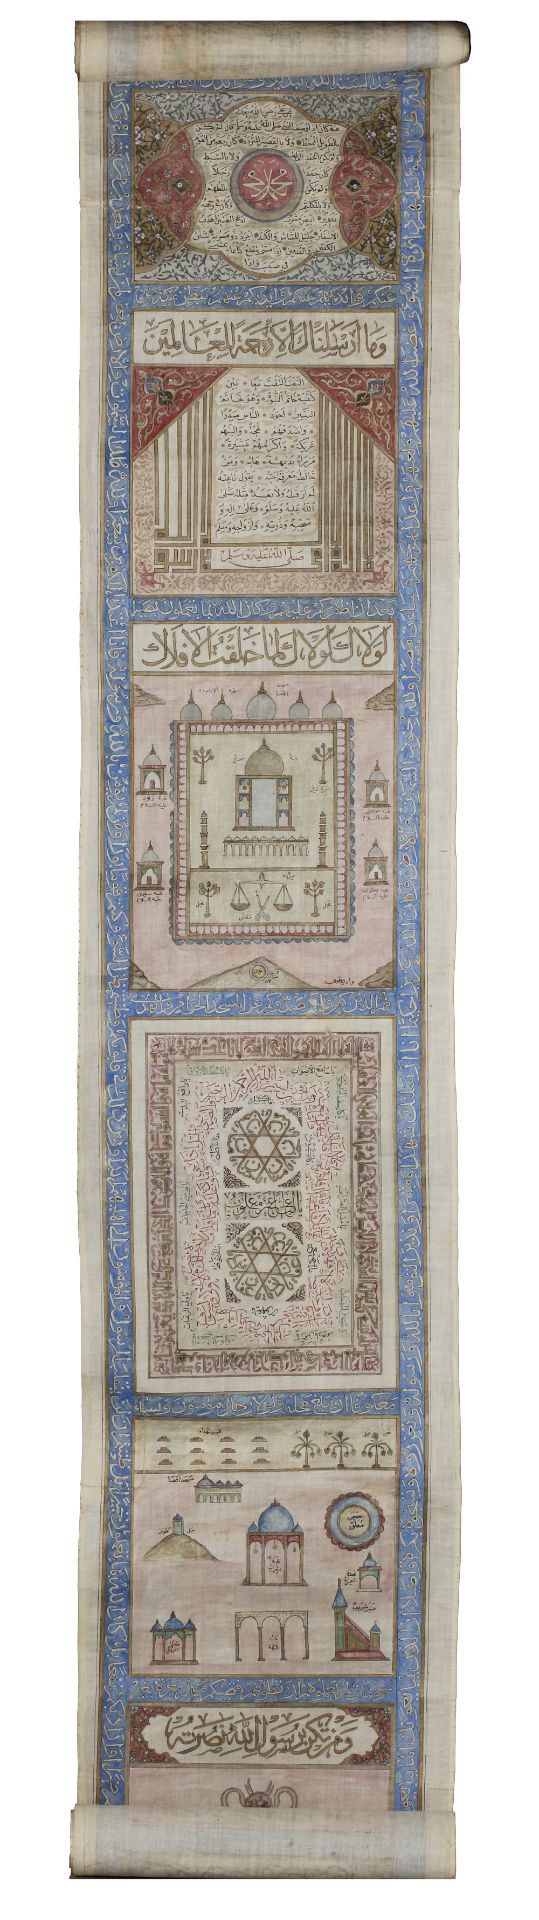 AN OTTOMAN ILLUMINATED HAJJ SCROLL, WRITTEN BY ABDUL-ALAH BIN HUSSAIN IN 1287 AH/1873 AD - Bild 8 aus 12